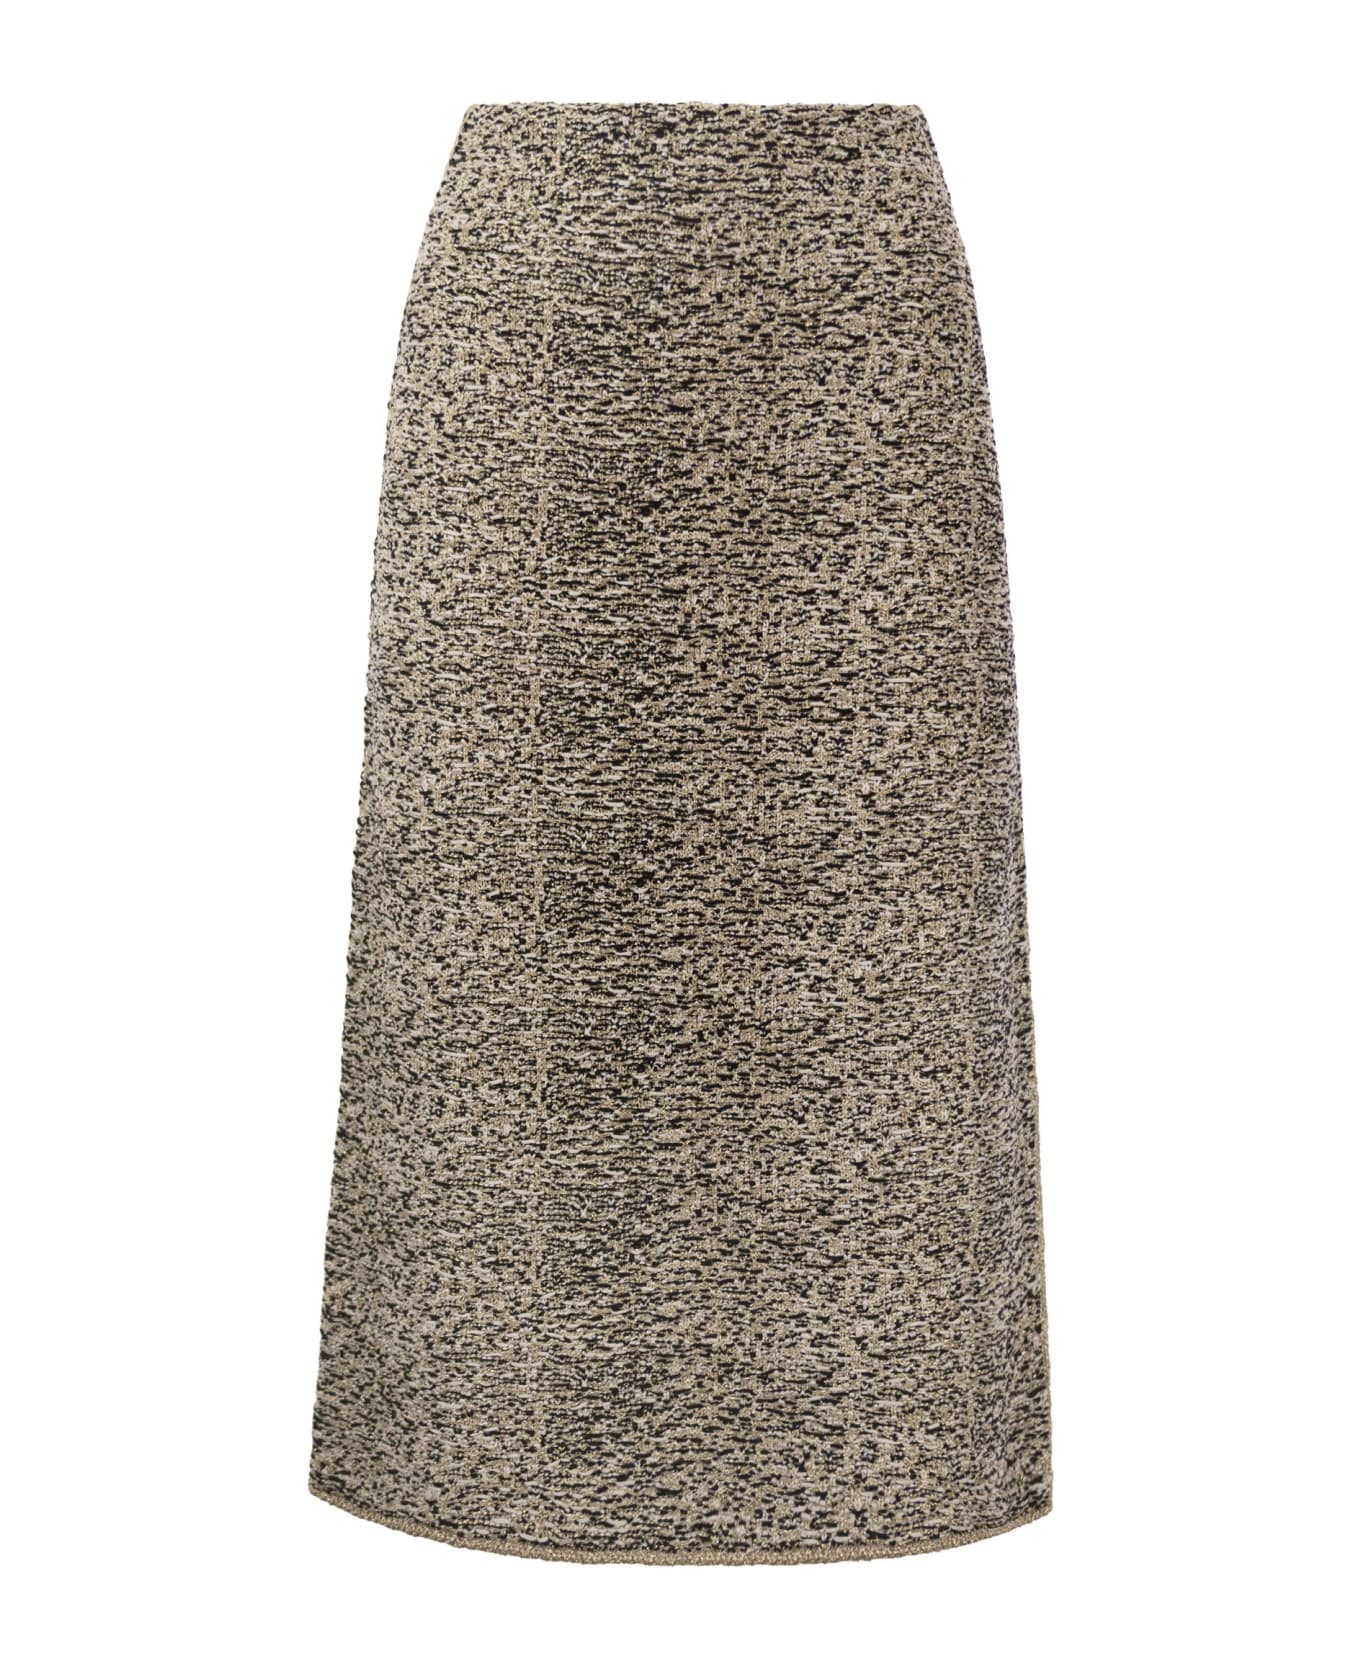 Fabiana Filippi Tweed Stitch Pencil Skirt - Black/gold